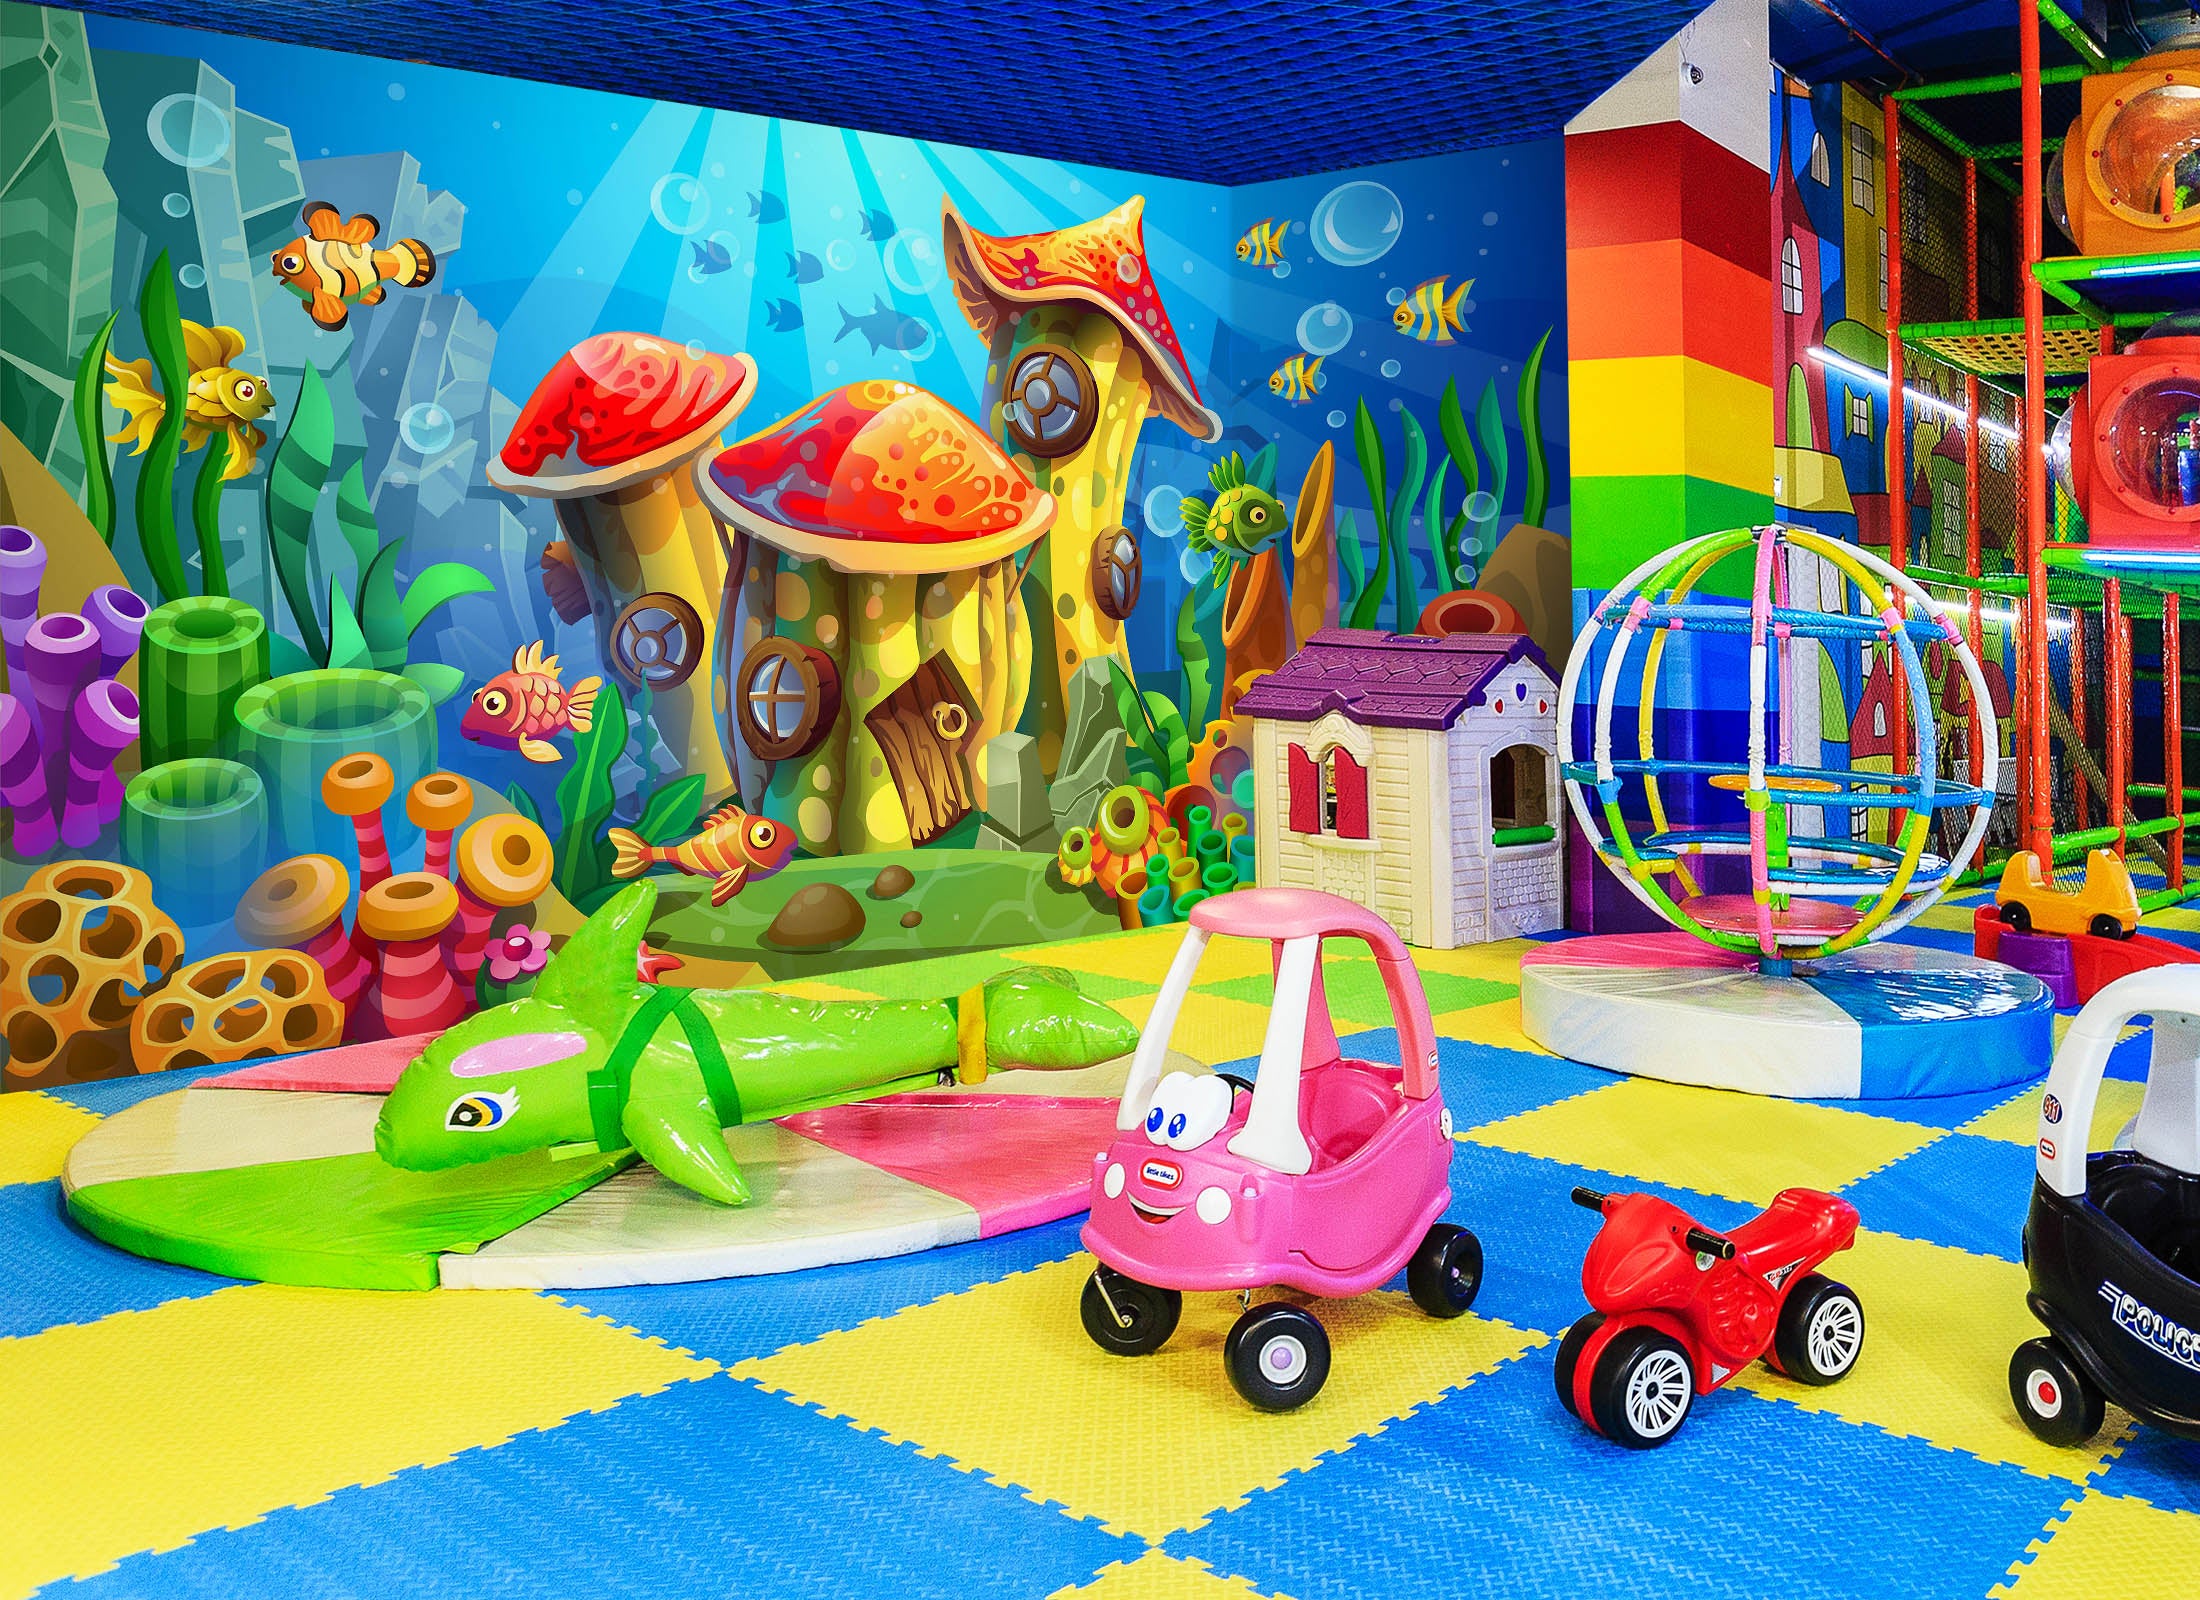 3D Undersea Houses 1431 Indoor Play Centres Wall Murals